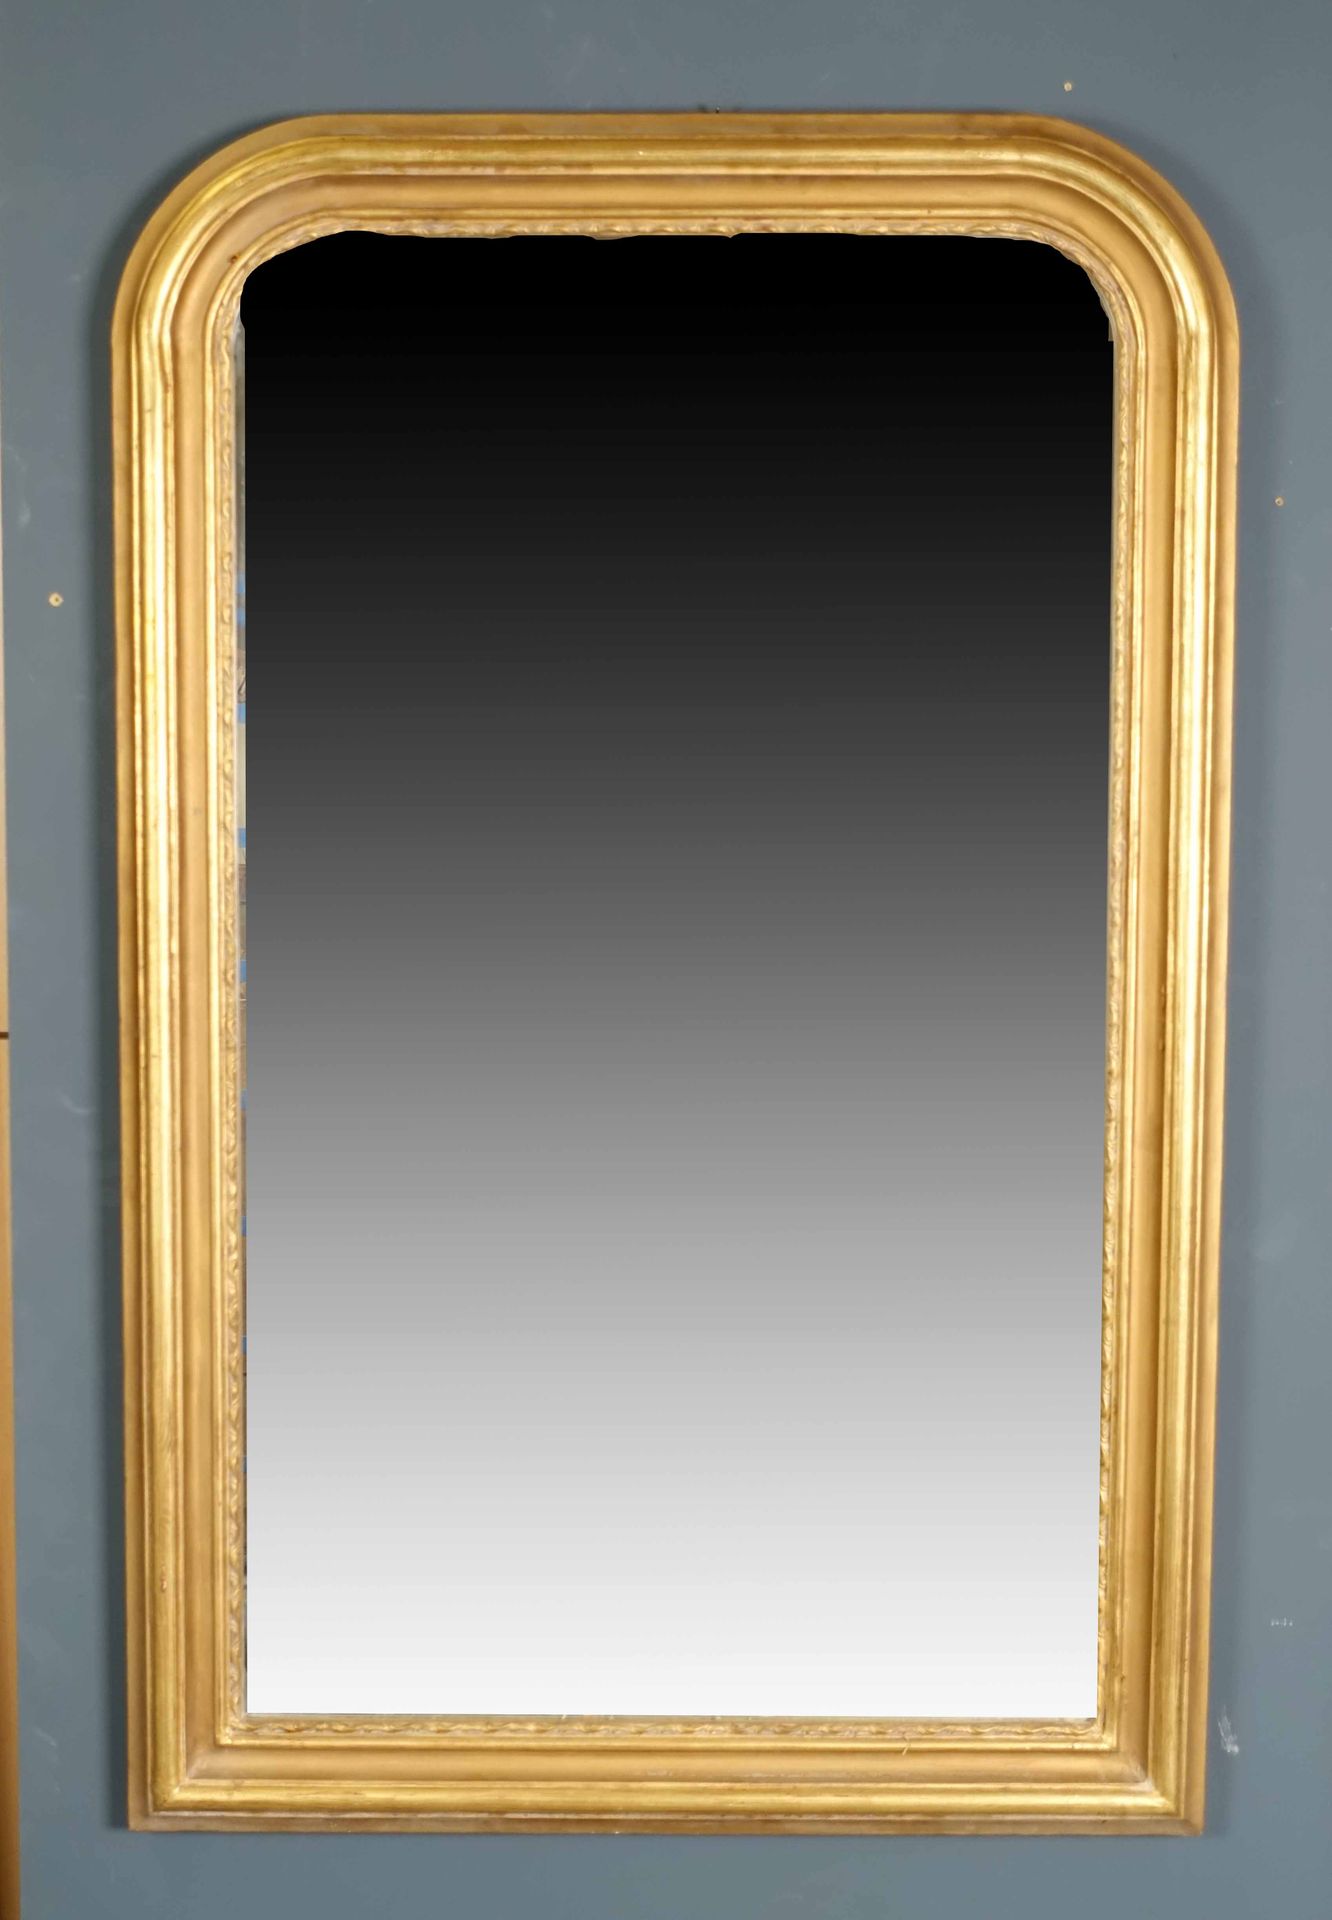 Miroir de Cheminée. Molded frame. Gilded wood. Size : 137 x 91 cm.